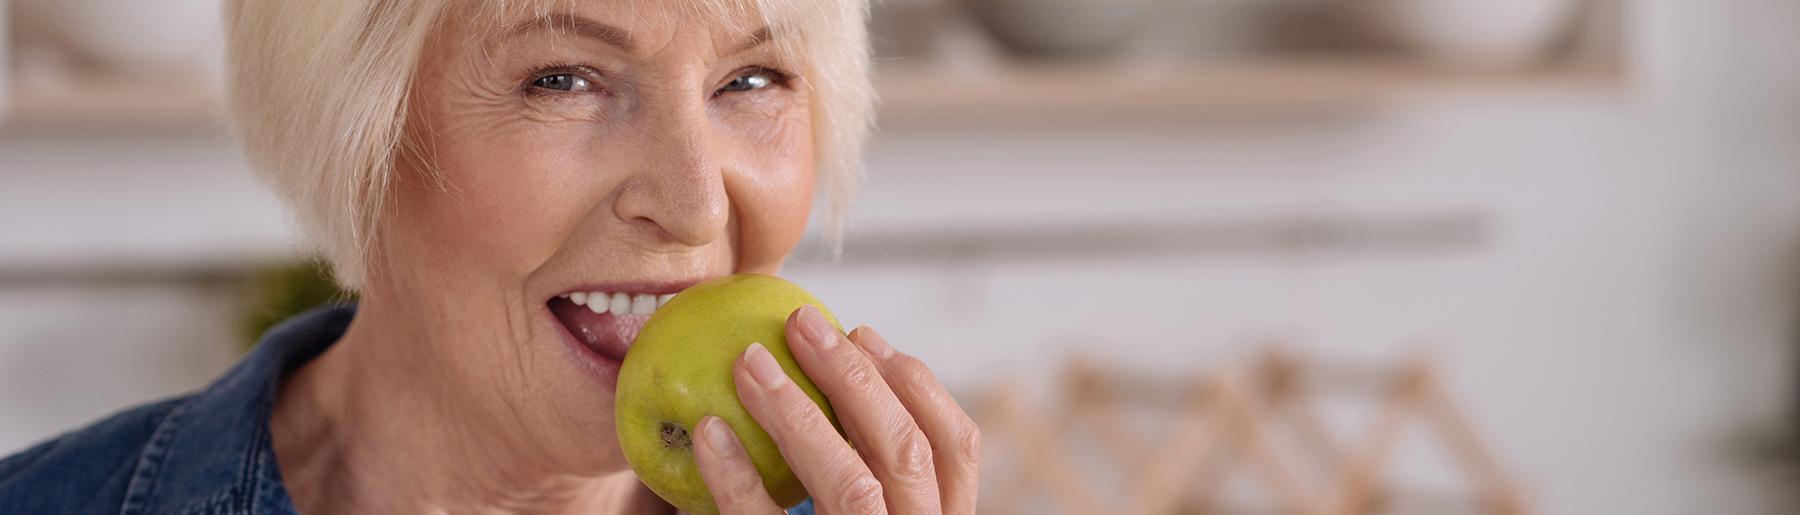 Woman biting in apple